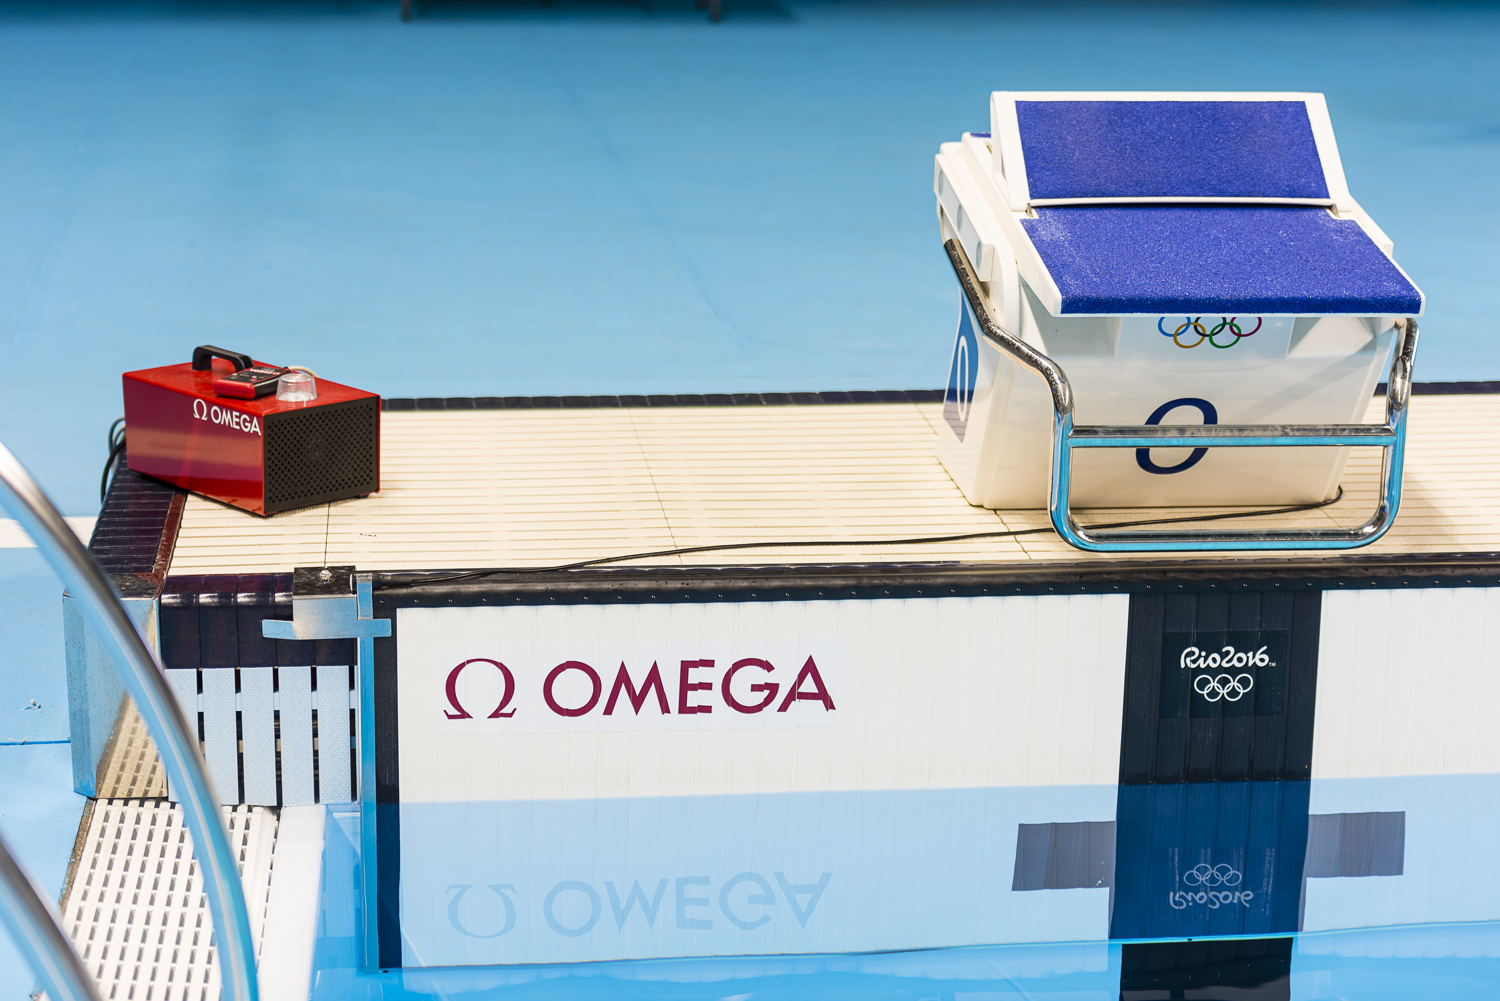 omega olympics photo finish camera 2016 rio16 10